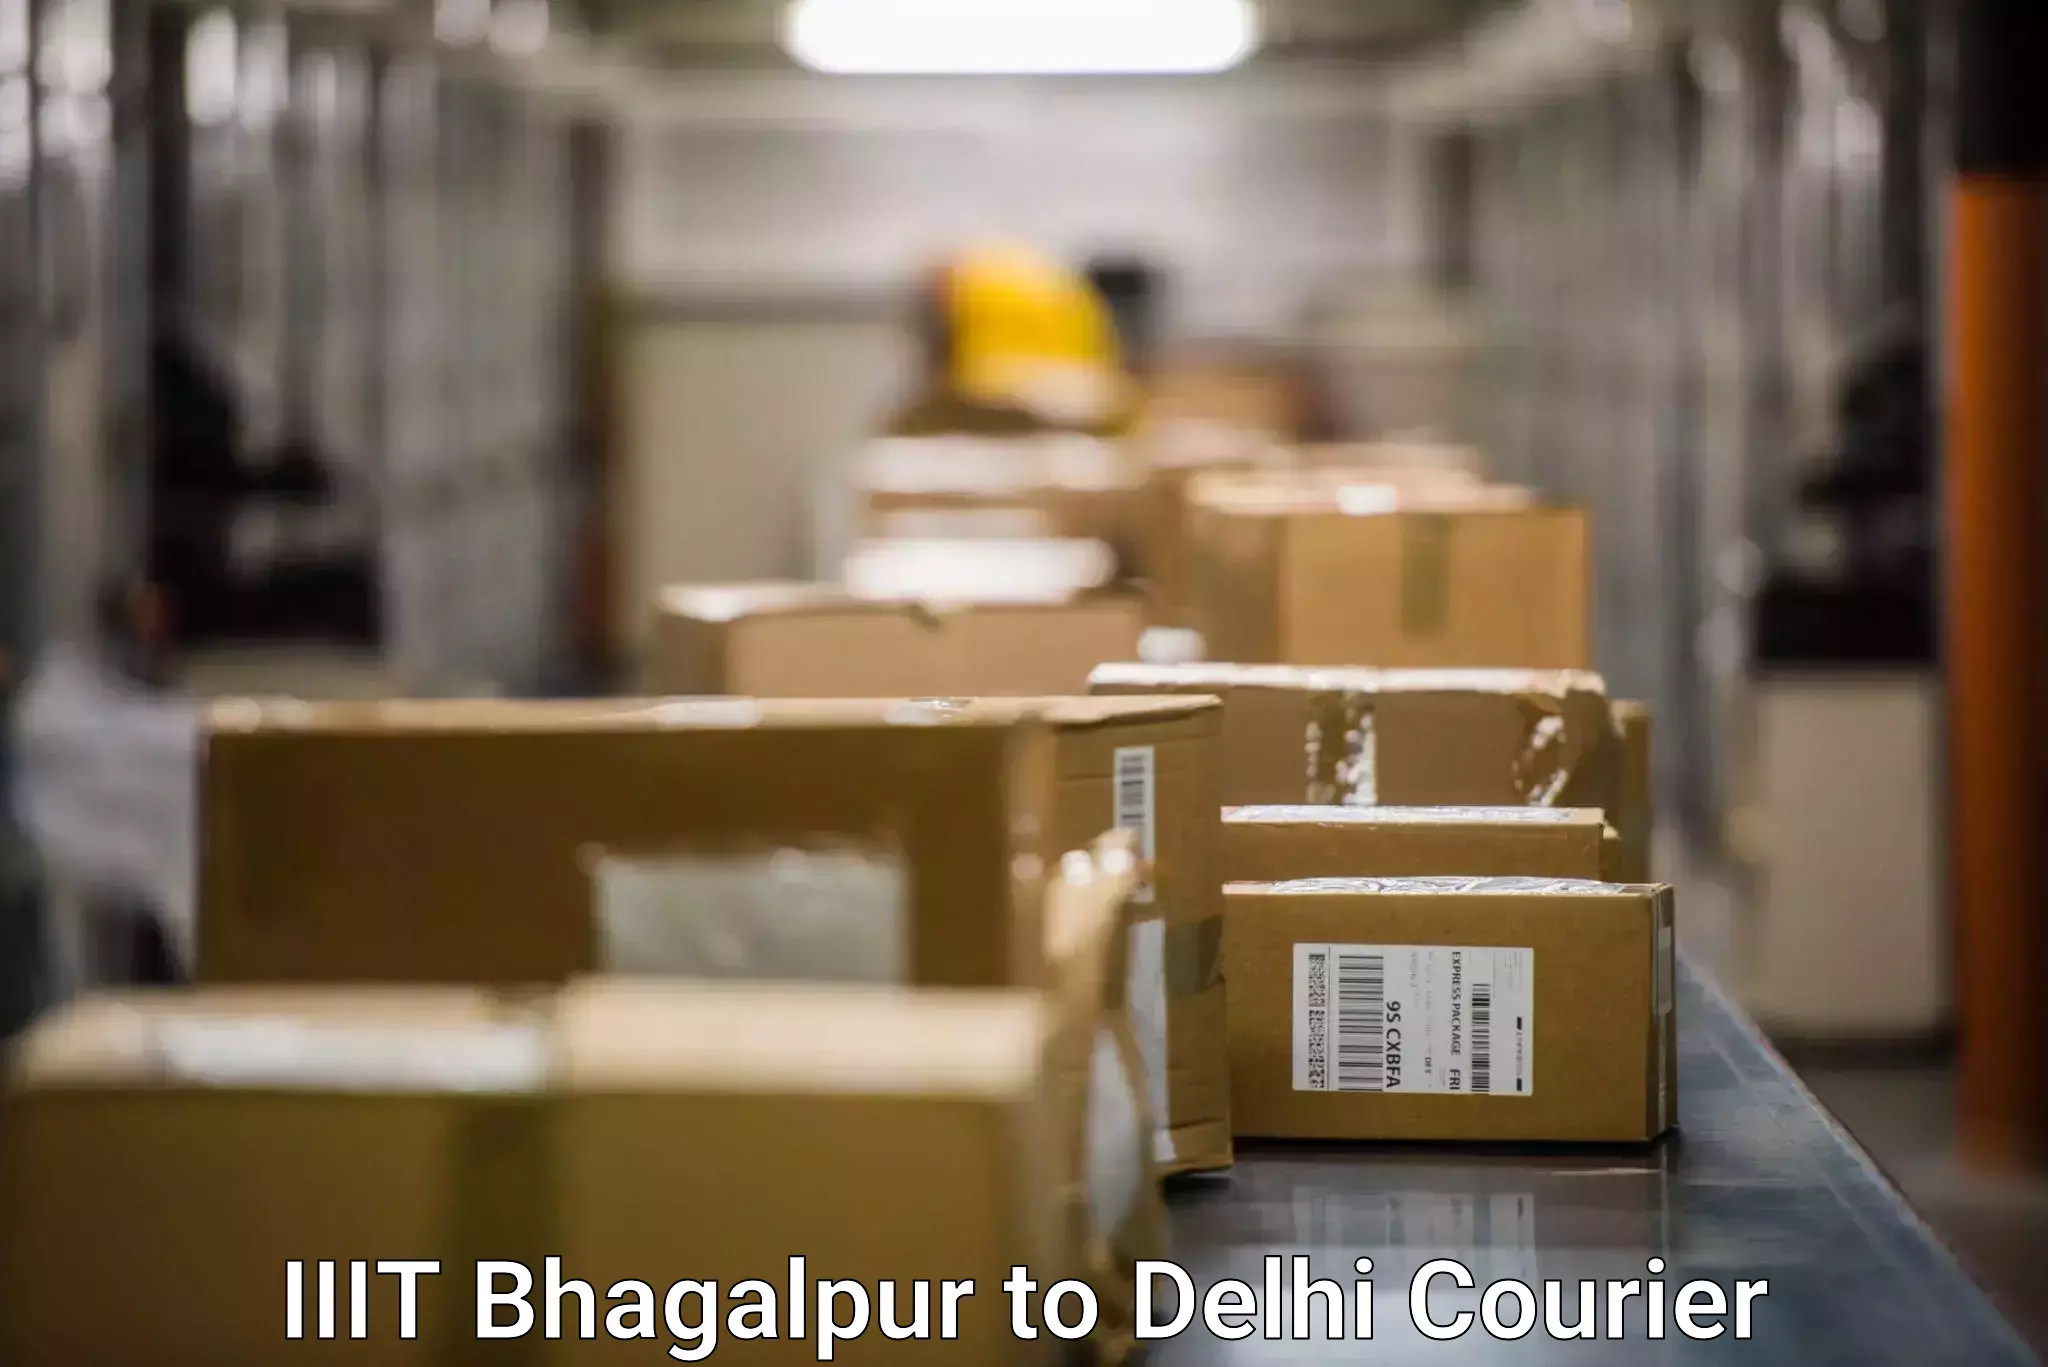 Ground shipping IIIT Bhagalpur to NIT Delhi